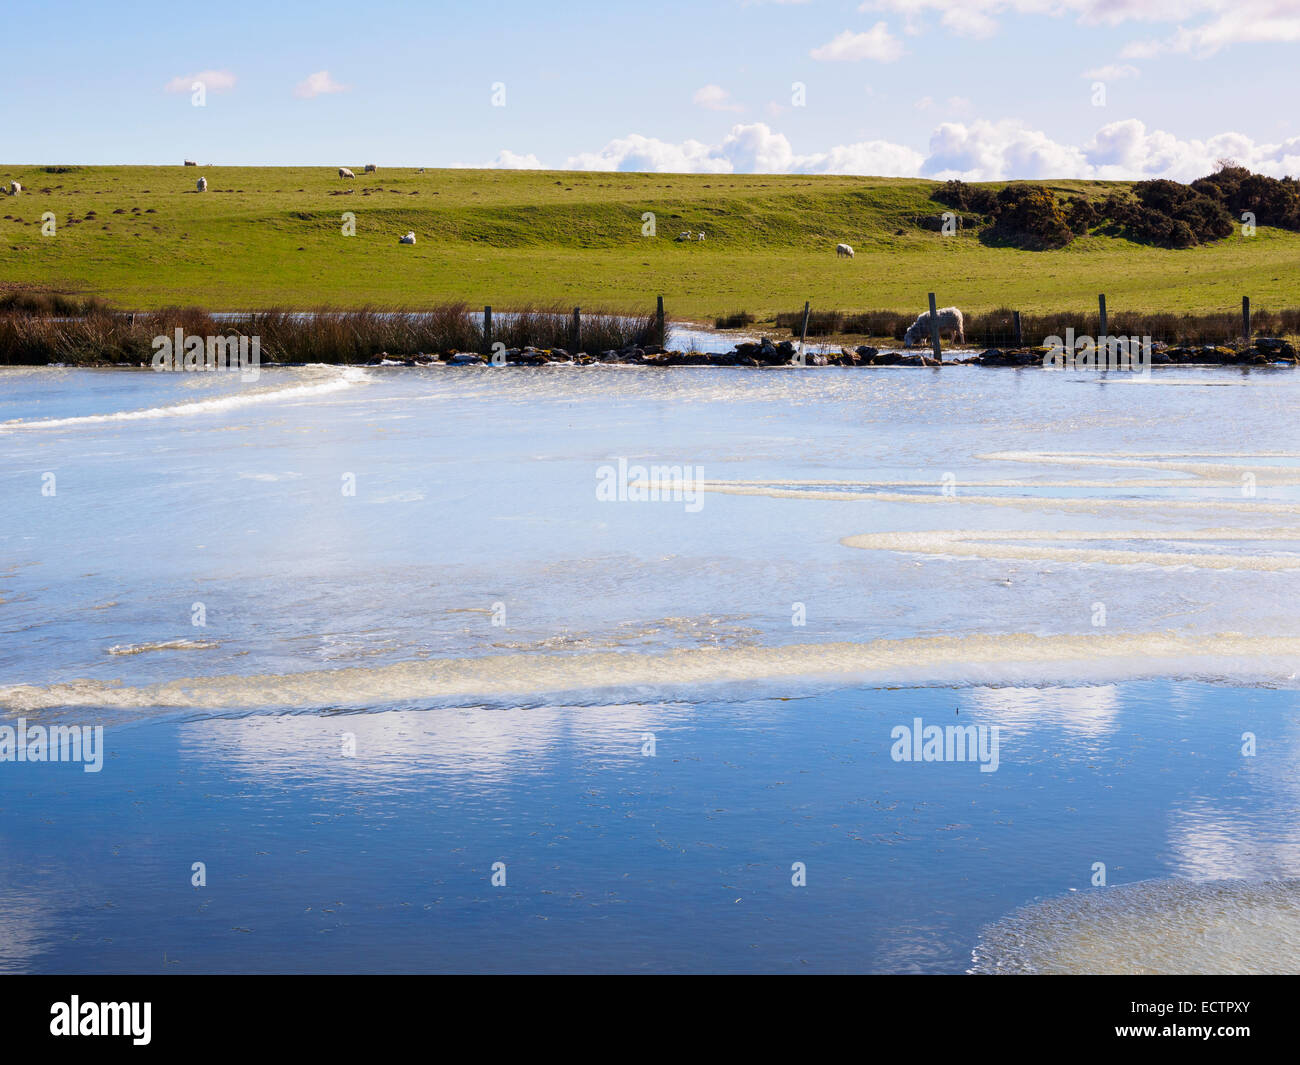 Ackerland mit großen gefrorenen Wasserpfütze und Schafe mit Lämmer überflutet. Isle of Anglesey, North Wales, UK, Großbritannien Stockfoto